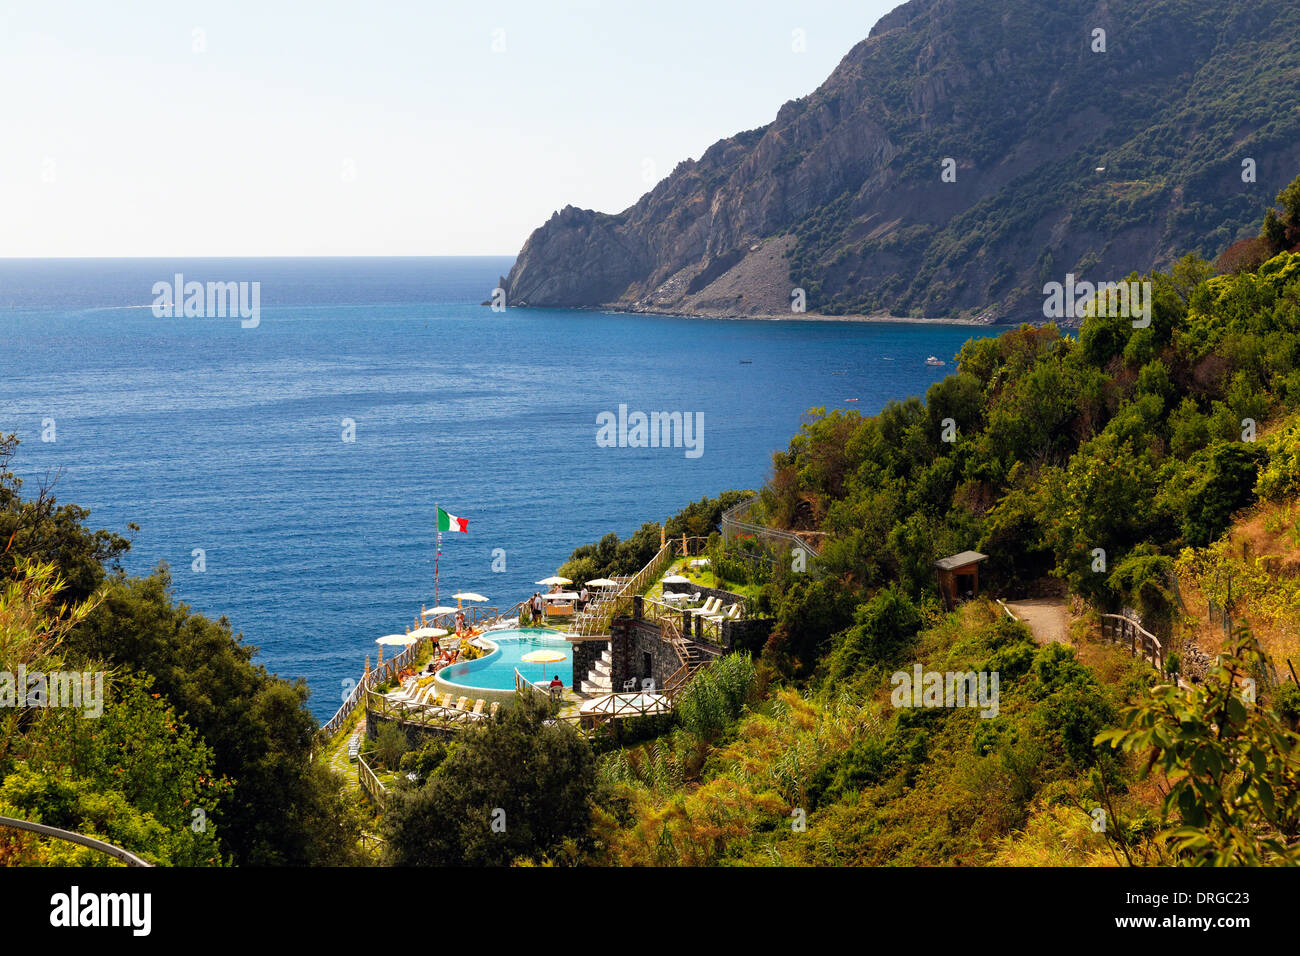 Portrait de la côte avec une piscine, Monterosso al Mare, Cinque Terre, ligurie, italie Banque D'Images